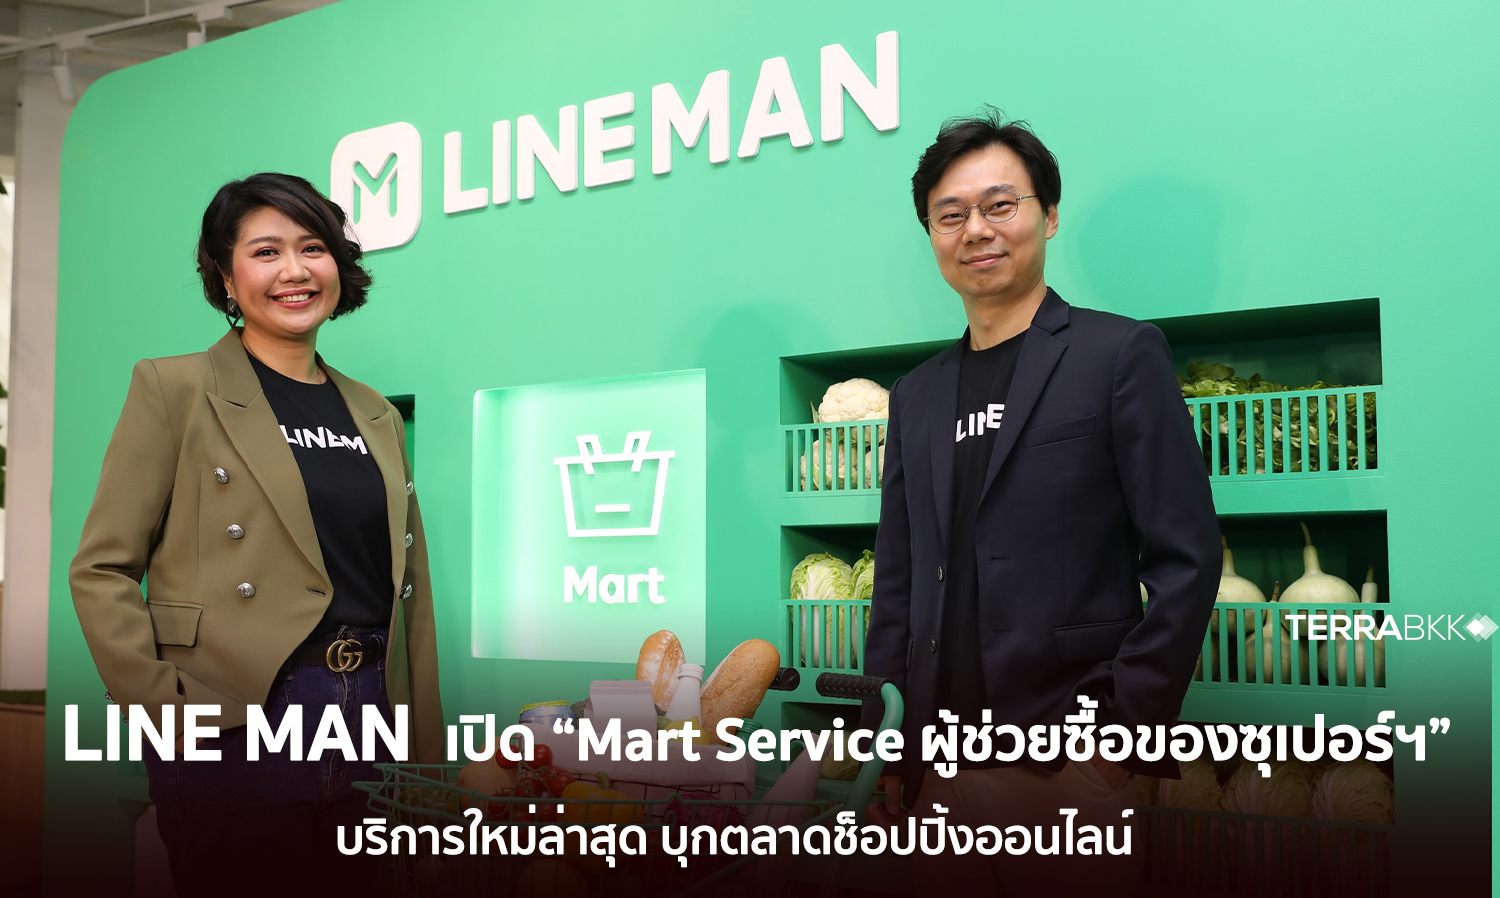 LINE MAN เปิด “Mart Service ผู้ช่วยซื้อของซุปเปอร์ฯ” บริการใหม่ล่าสุด บุกตลาดช็อปปิ้งออนไลน์ 